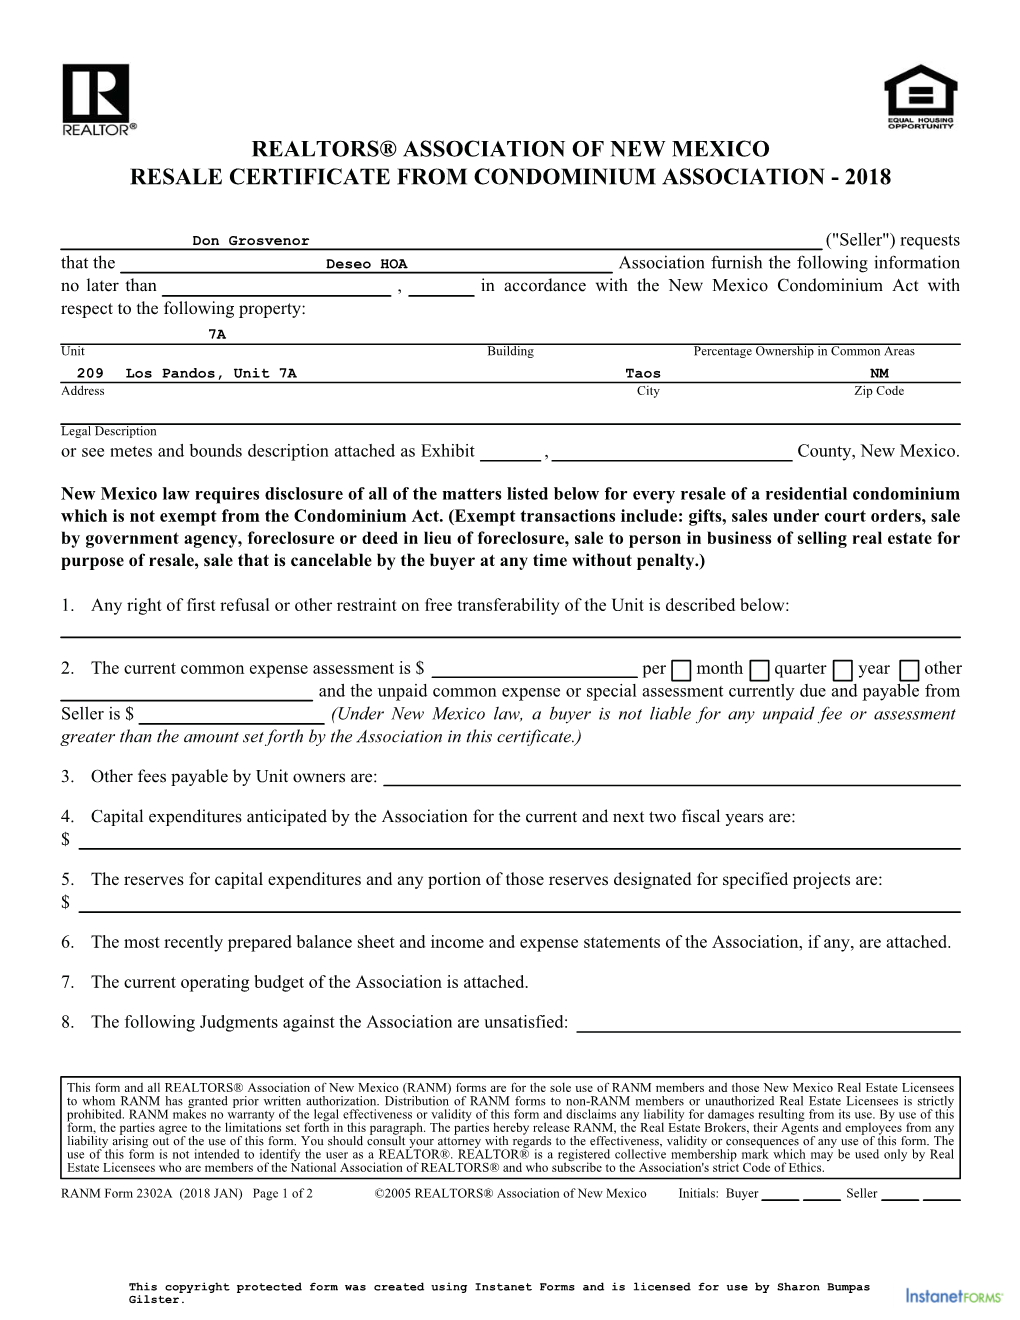 Resale Certificate from Condominium Association - 2018